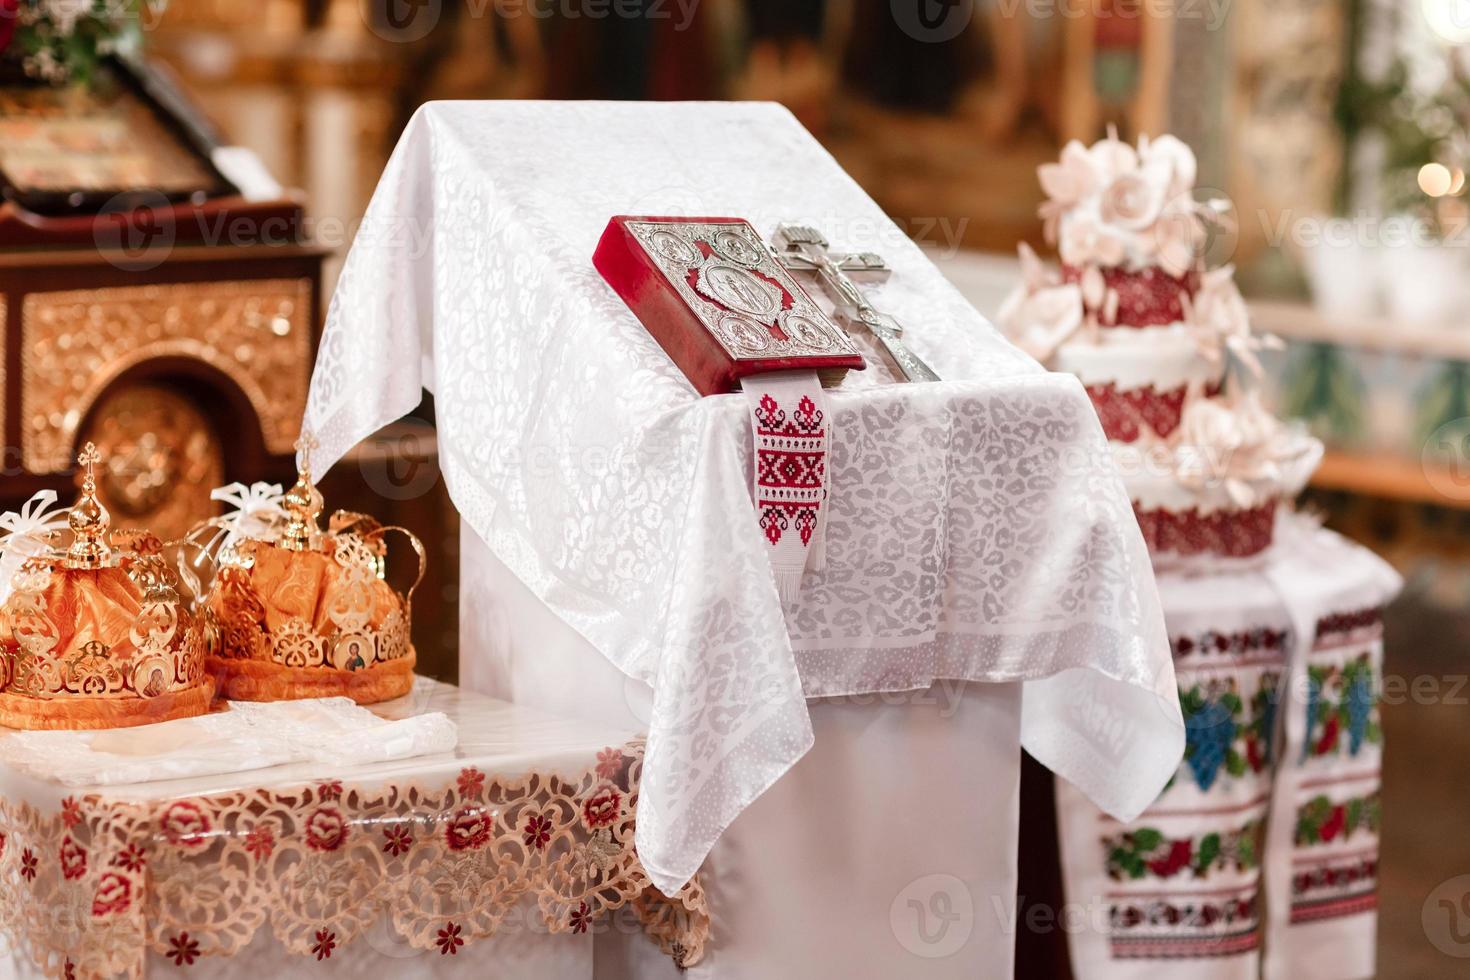 due corone i matrimoni destinati alla cerimonia nella chiesa ortodossa. accessori da sposa ortodossi Sacra Bibbia e croce d'argento foto